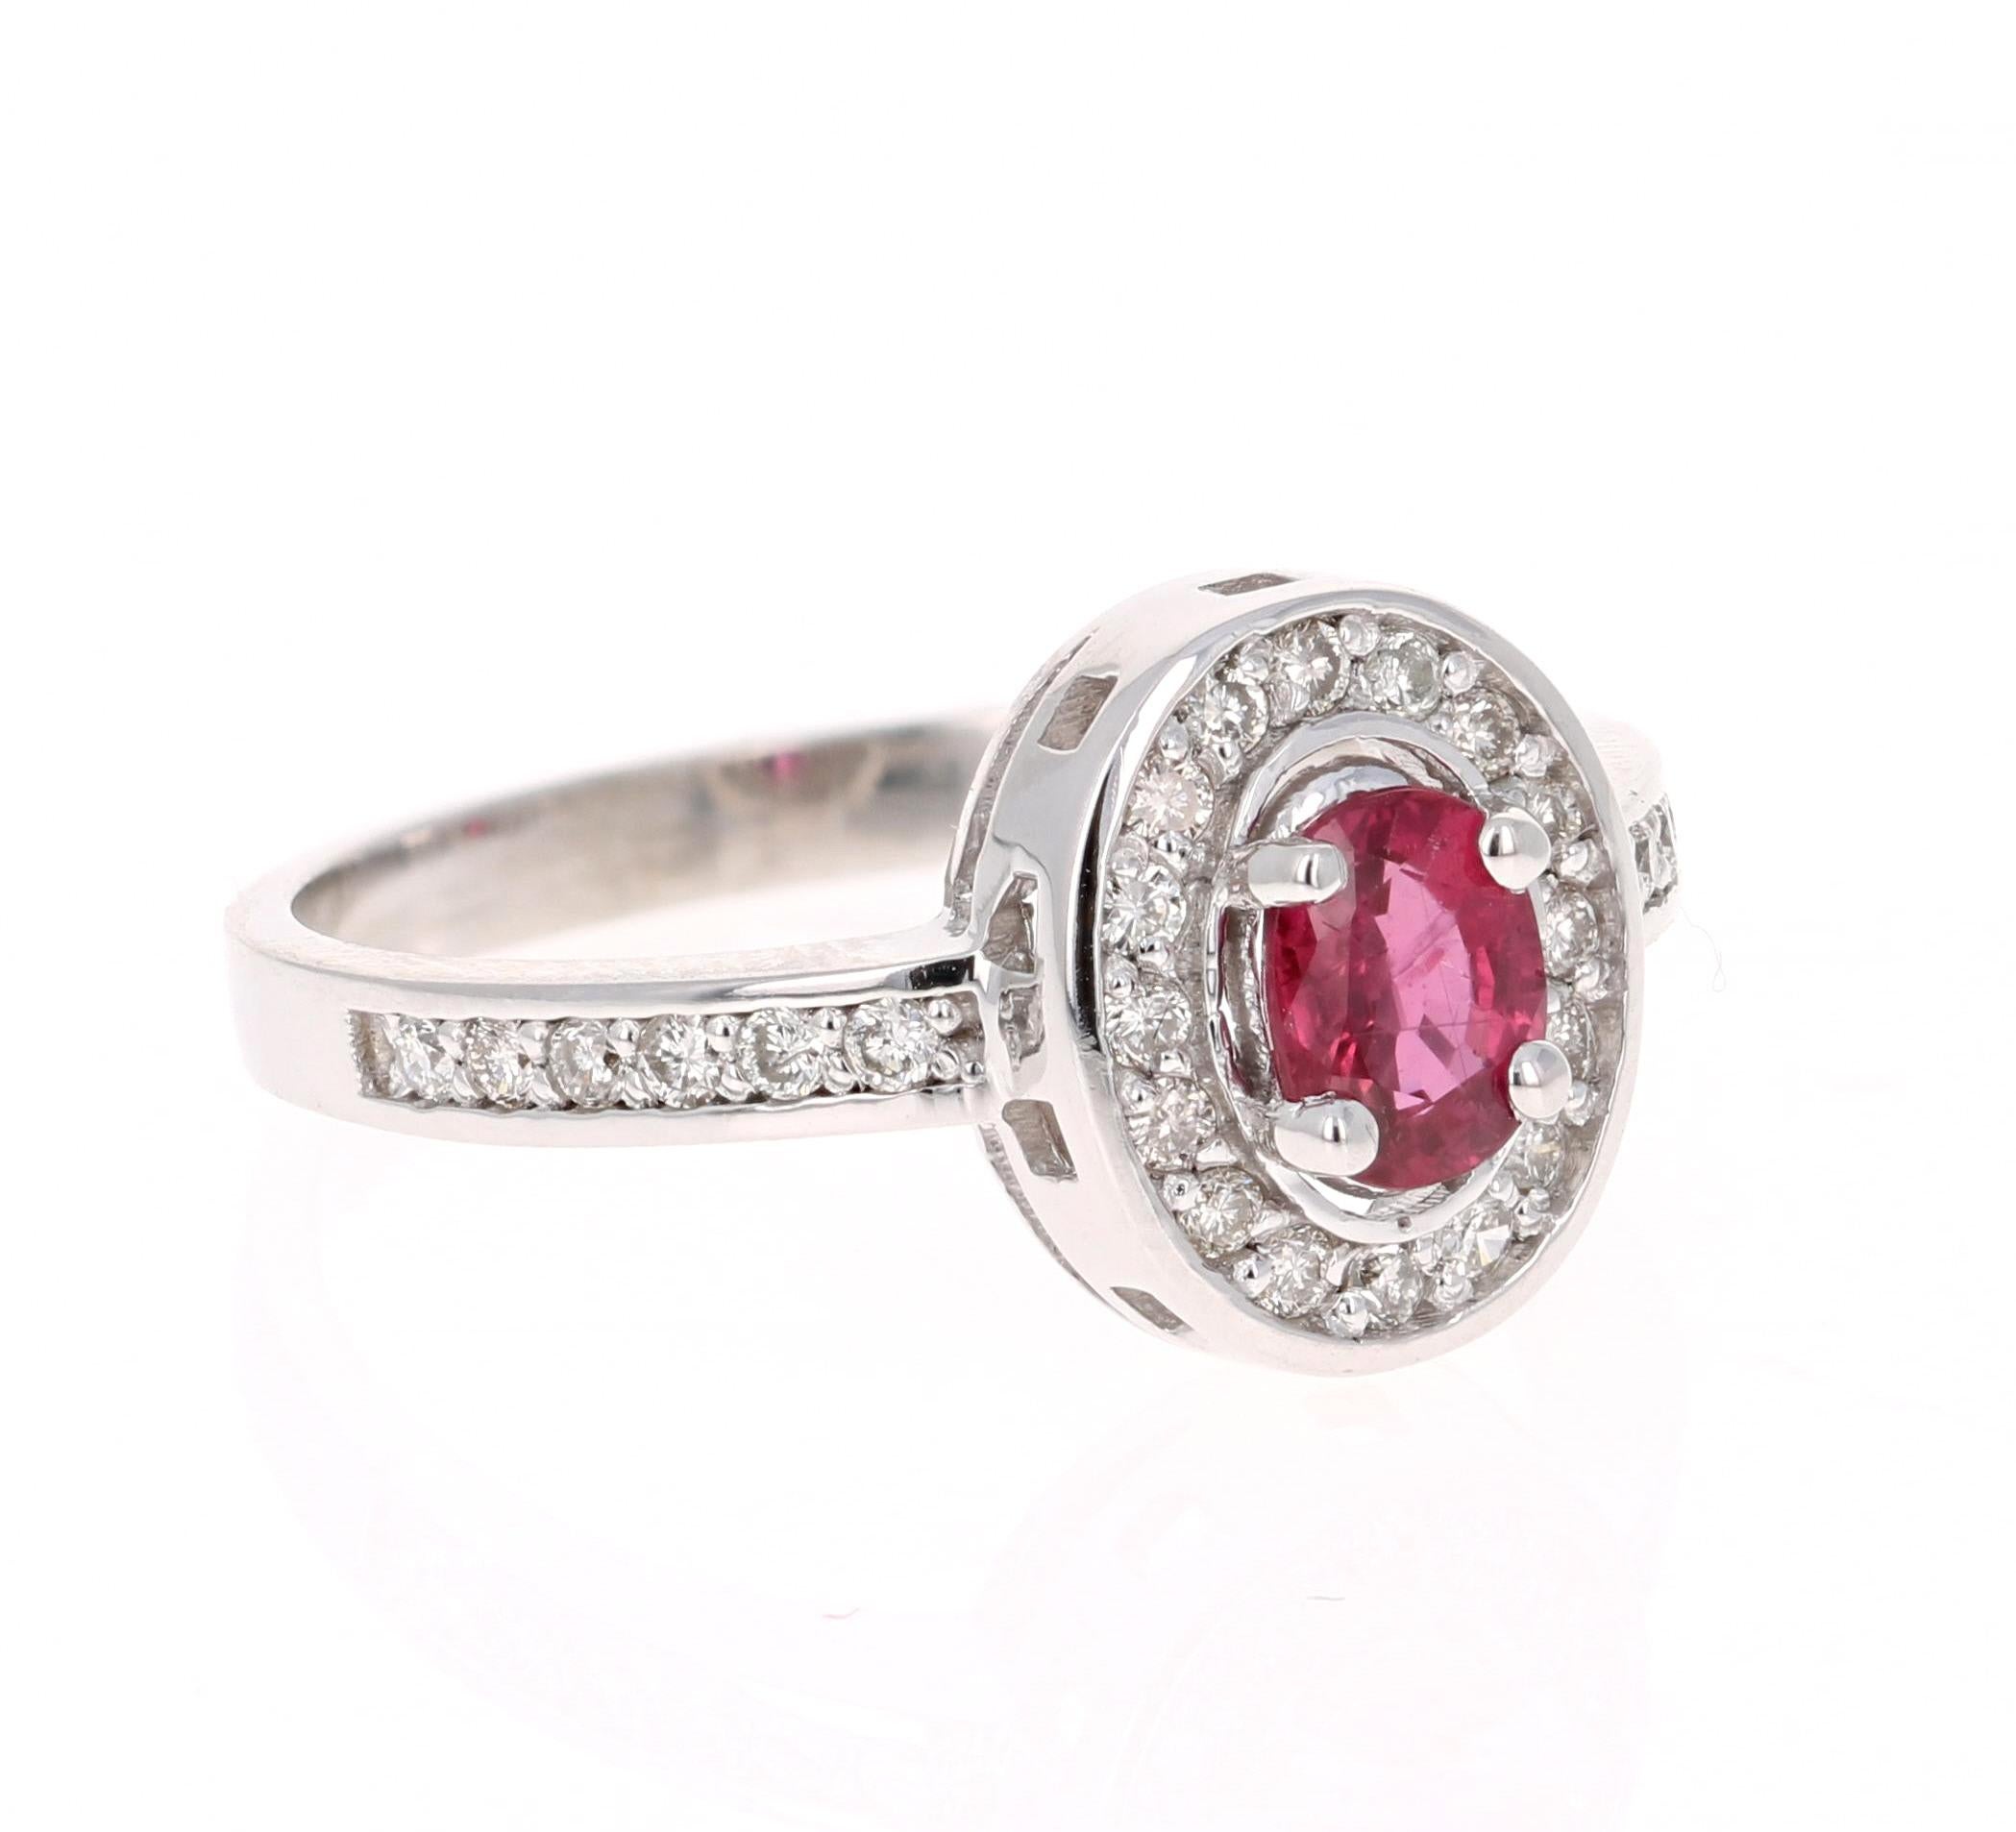 Einfach schöner Rubin-Diamant-Ring mit einem burmesischen Rubin im Ovalschliff von 0,59 Karat, der von 28 Diamanten im Rundschliff mit einem Gewicht von 0,31 Karat umgeben ist. Das Gesamtkaratgewicht des Rings beträgt 1,23 Karat. Die Reinheit und